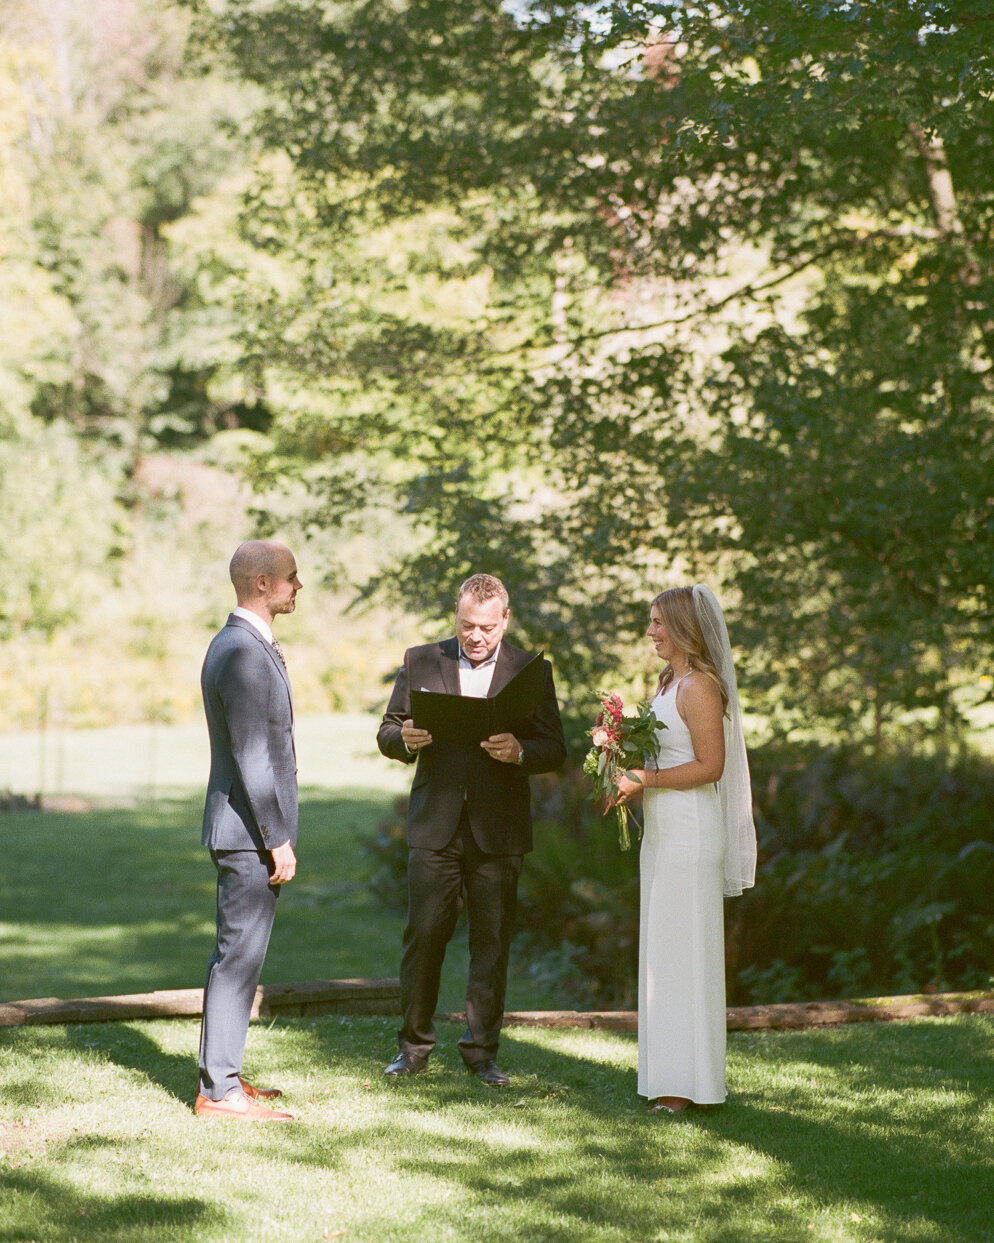 Analog-Film-Micro-Wedding-Photos-Inspiration-Backyard-Toronto-Ontario-32.JPG